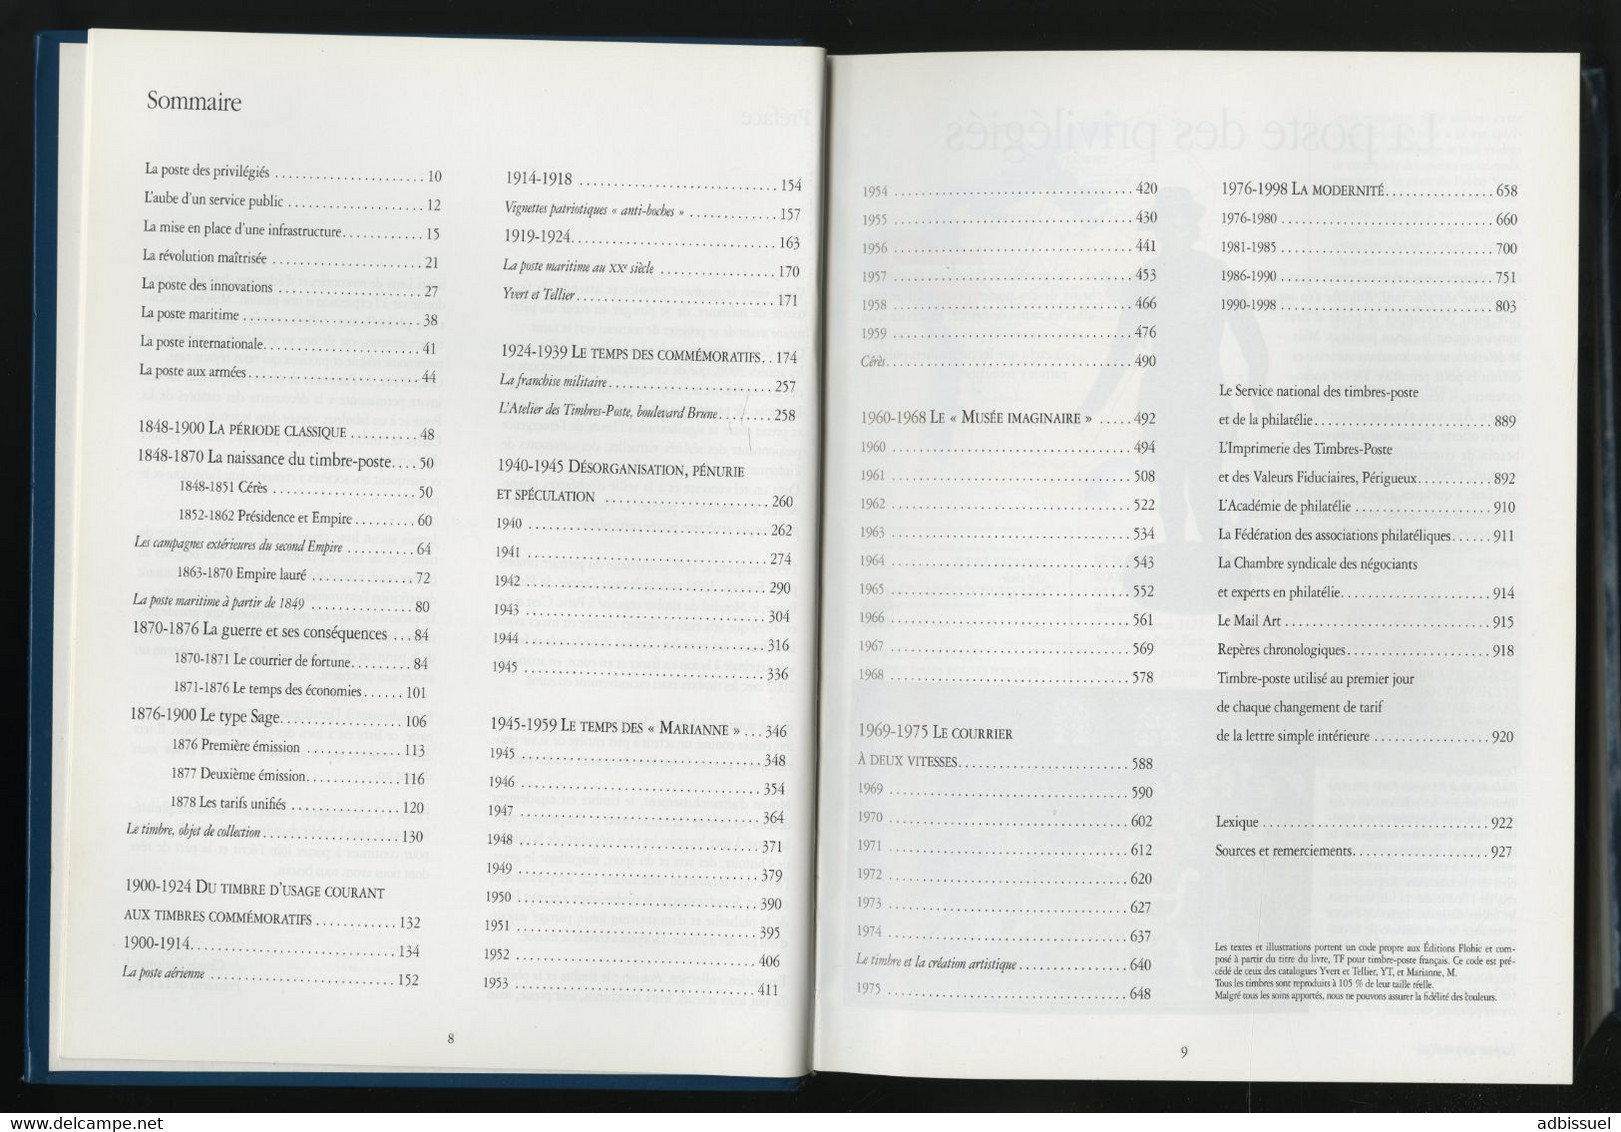 Le Patrimoine Du Timbre-poste Français. Edition De 1998 Avec 928 Pages. TB - Philatelie Und Postgeschichte